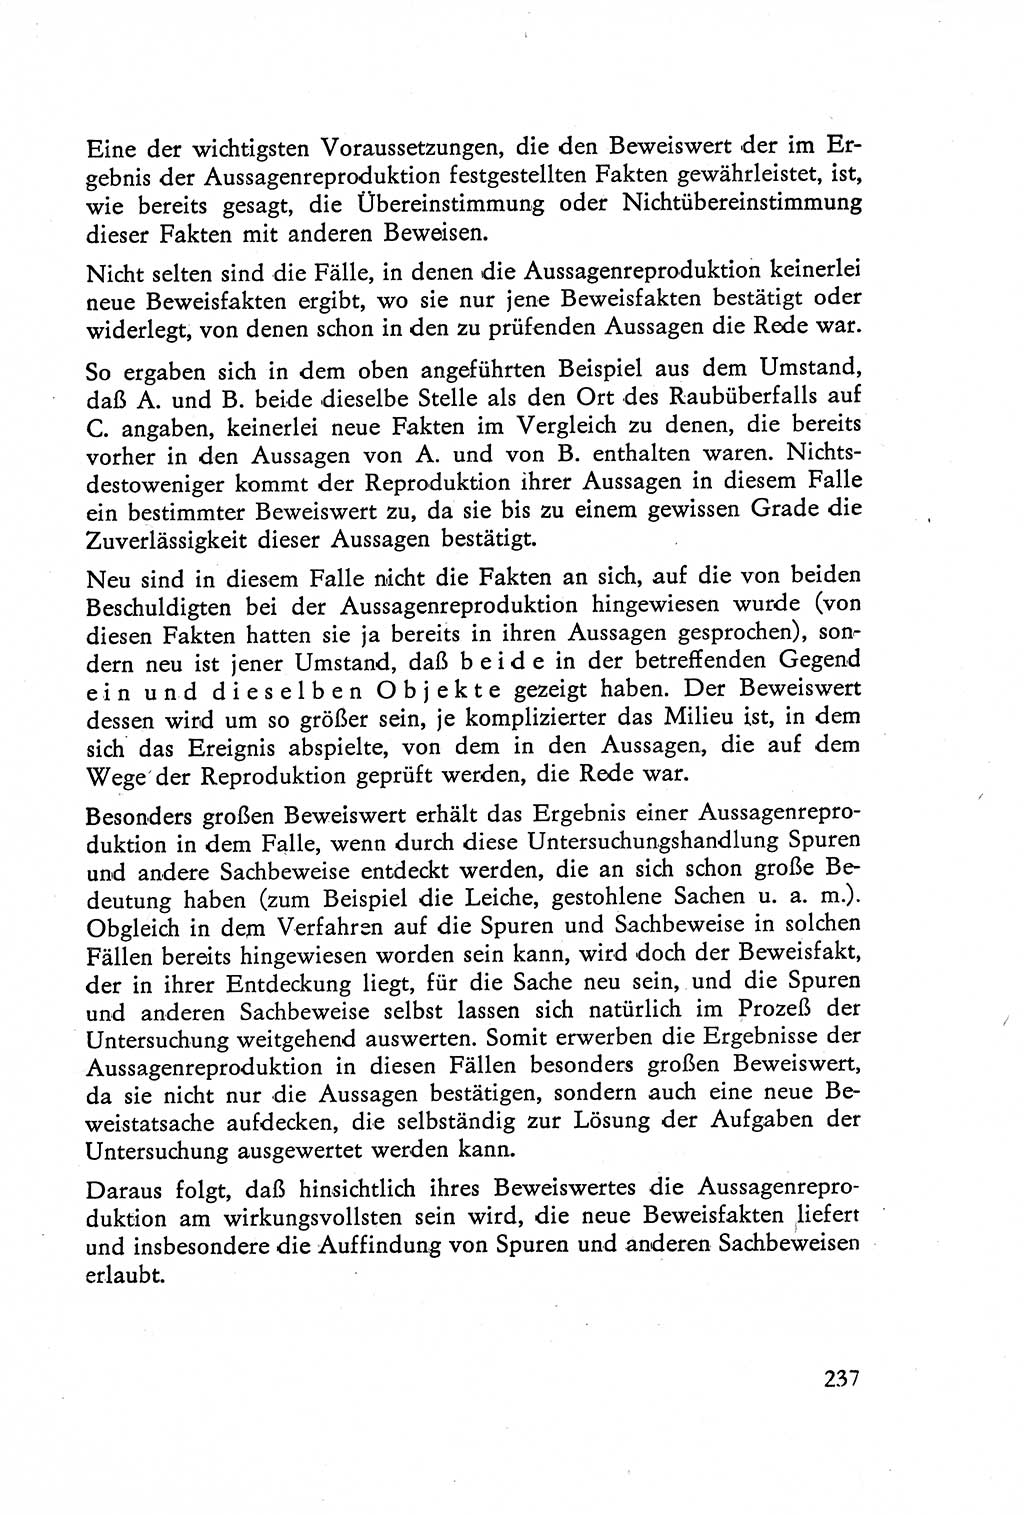 Die Vernehmung [Deutsche Demokratische Republik (DDR)] 1960, Seite 237 (Vern. DDR 1960, S. 237)